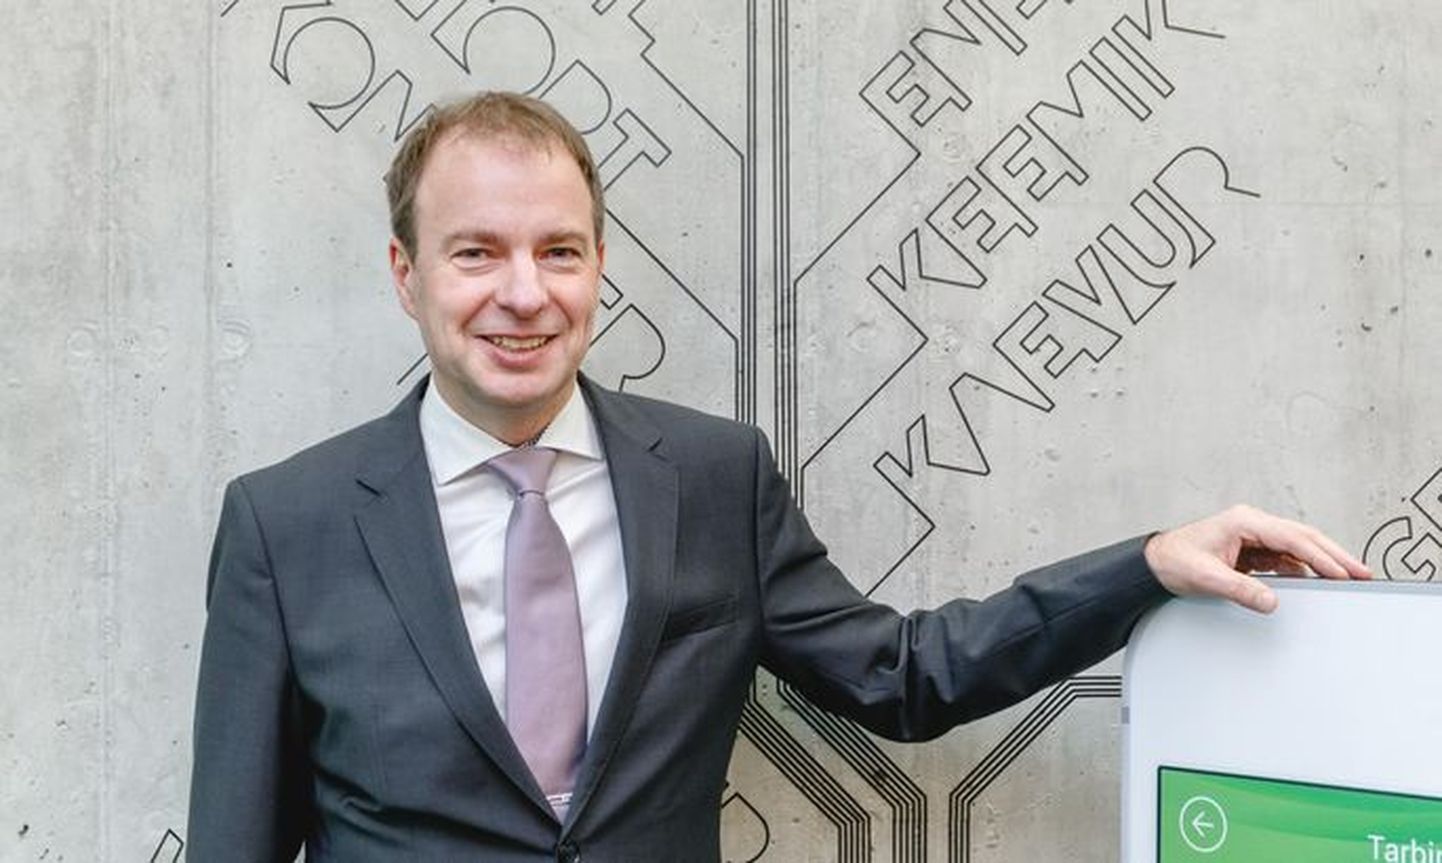 За спиной у Eesti Energia успешный год, что стало основным в решении совета госпредприятия продлить трудовой договор с председателем правления Хандо Суммером еще на четыре года.